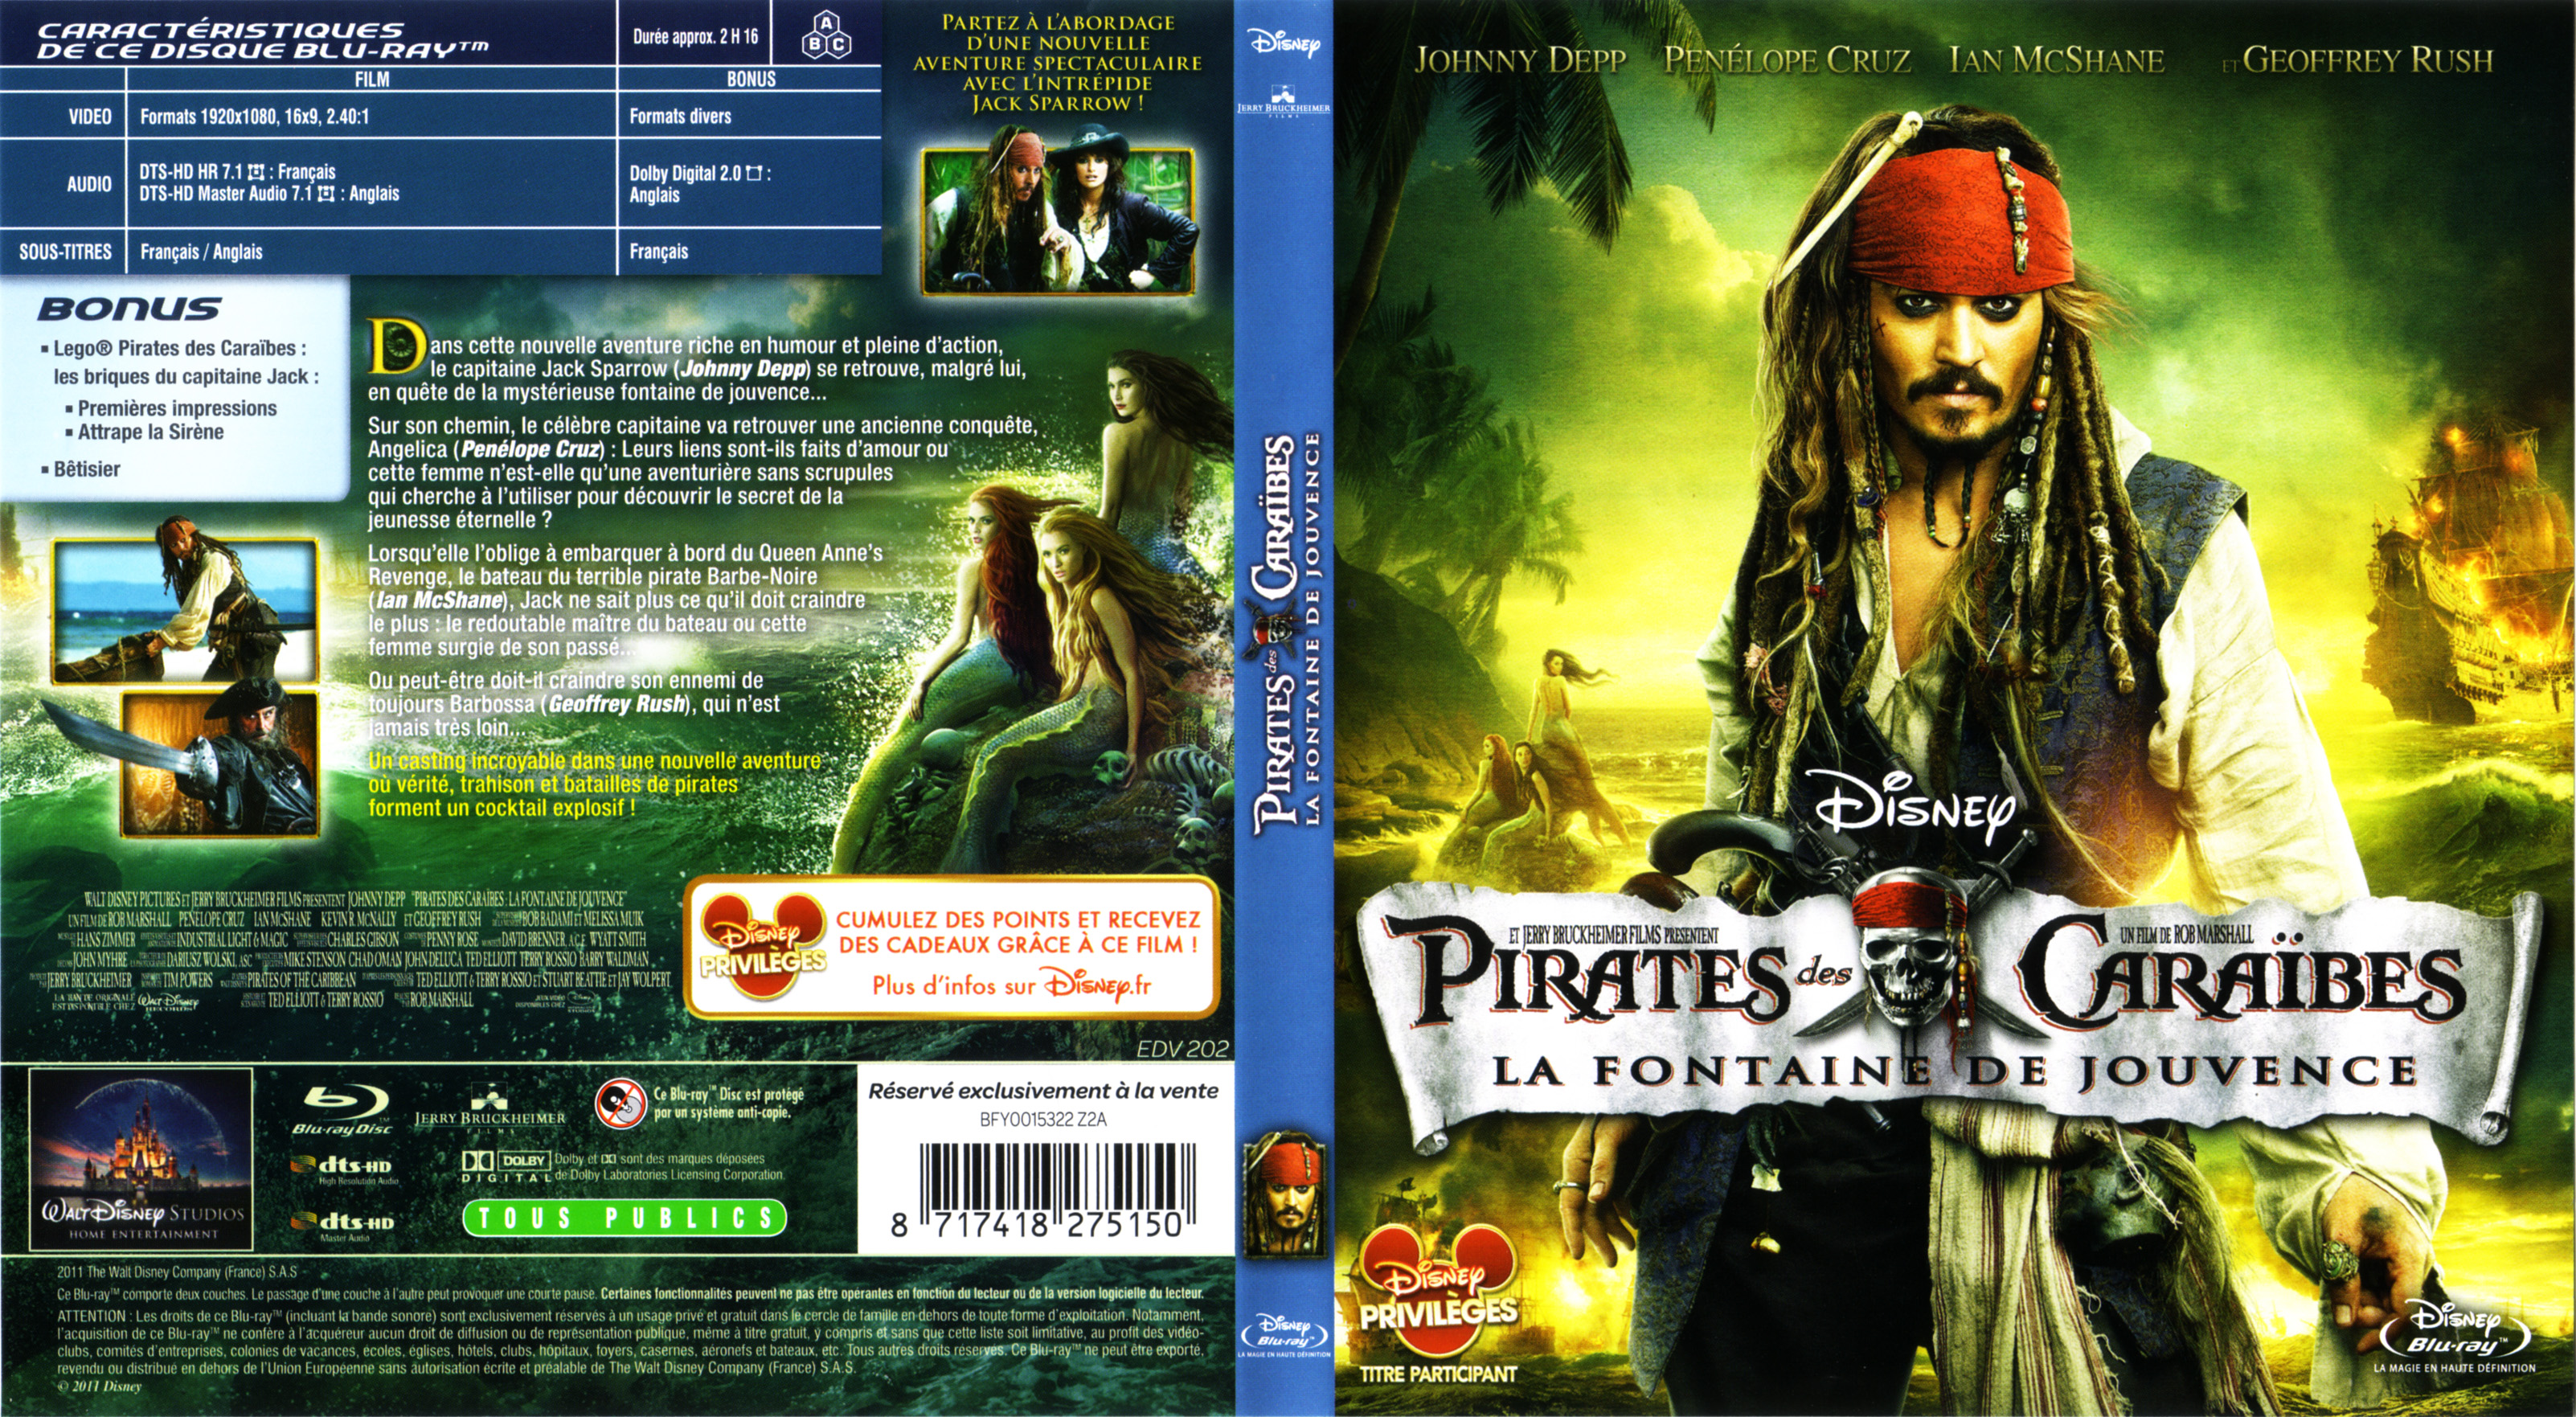 Jaquette DVD Pirates des Caraibes la Fontaine de Jouvence (BLU-RAY)